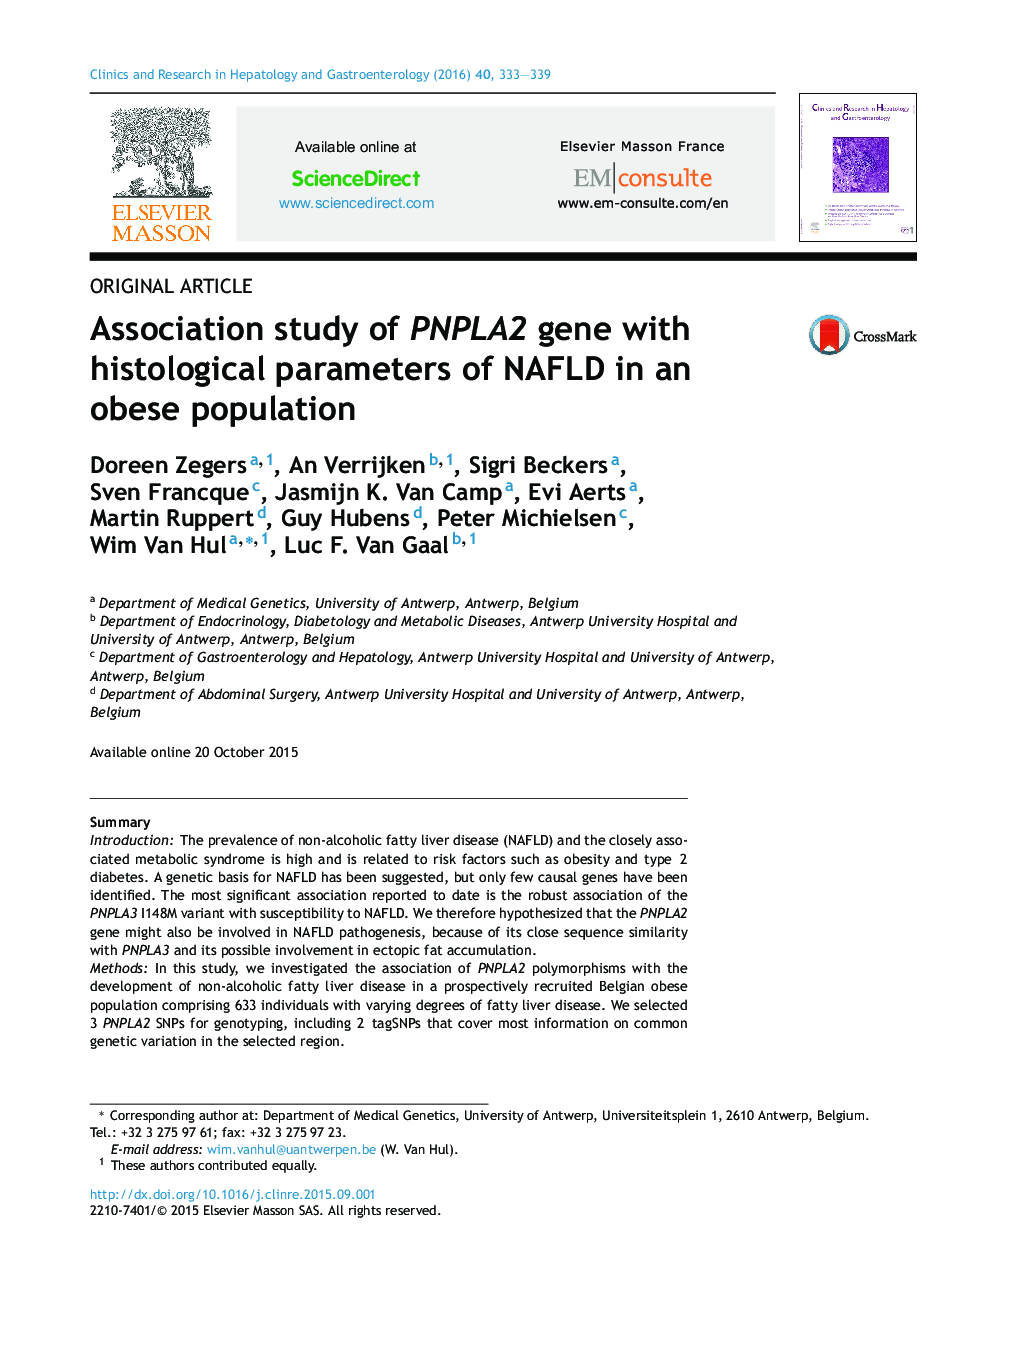 بررسی ارتباط ژن PNPLA2 با پارامترهای بافت شناسی NAFLD در جمعیت چاق